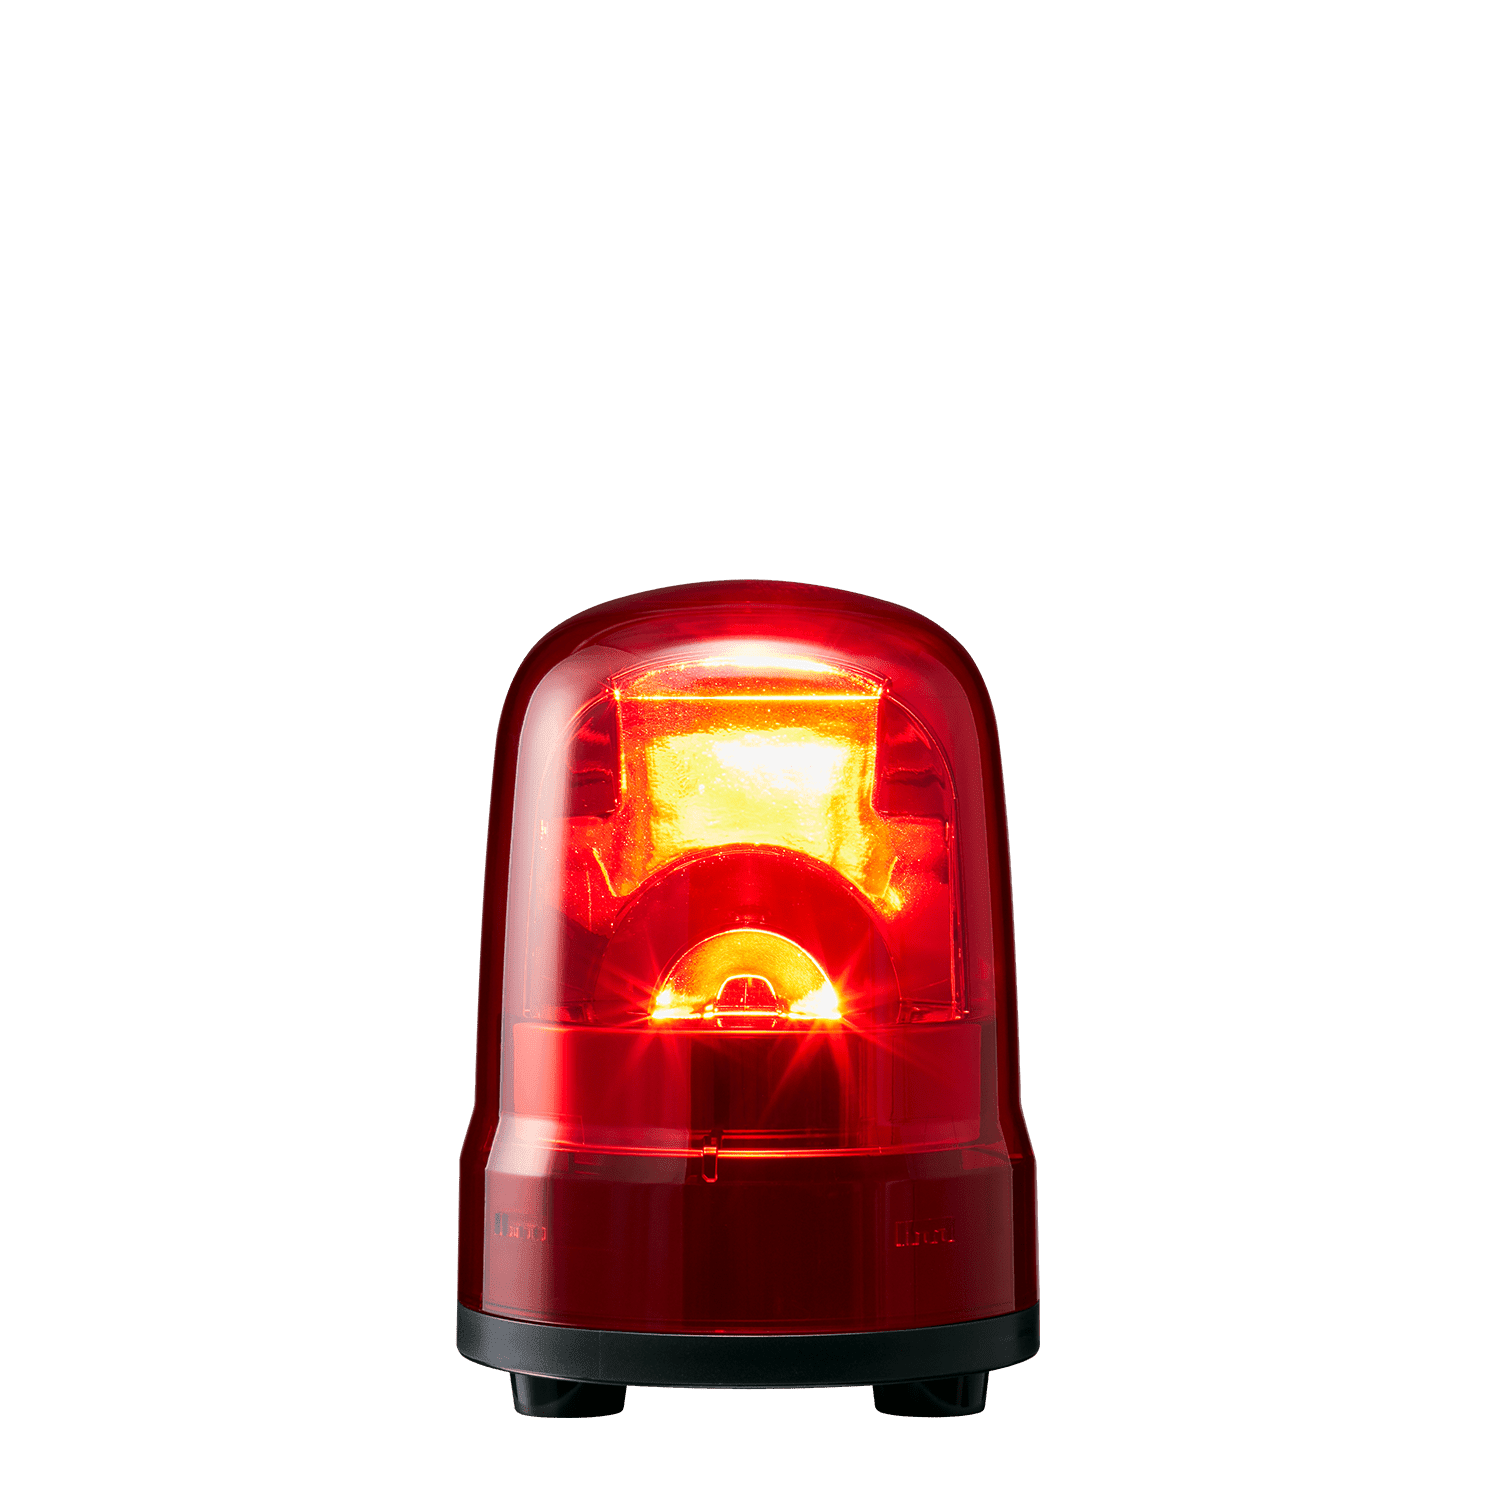 パトライト 表示灯 SL15-M2JN-R Φ150 AC100 240V 発光パターン（3種） 赤色 3点ボルト足取付 